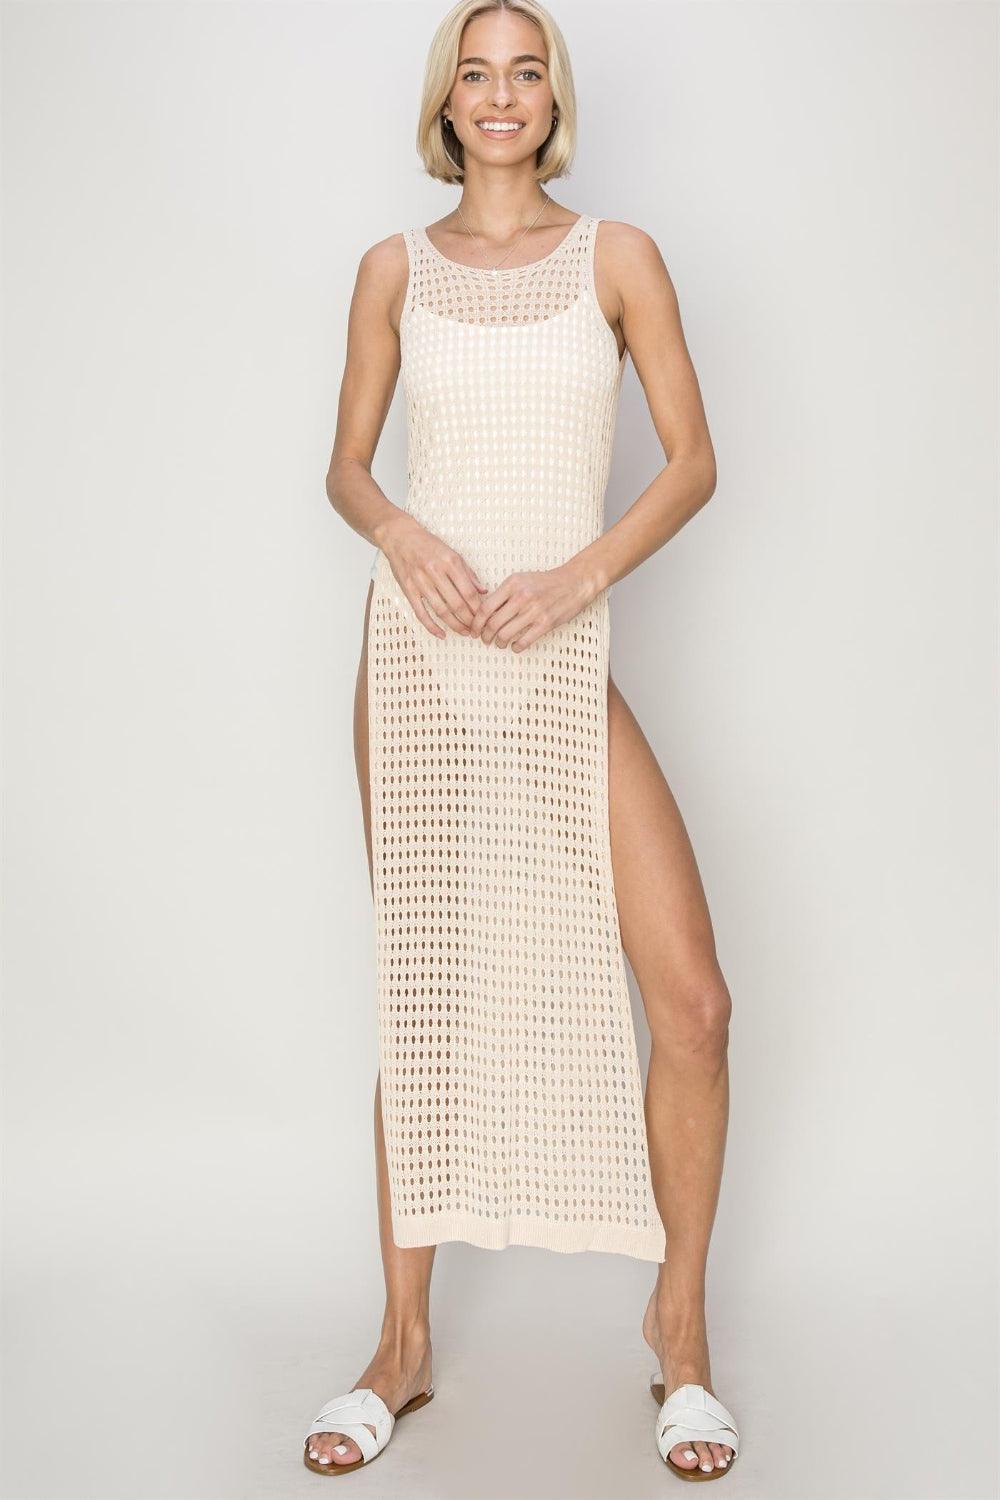 HYFVE Crochet Backless Cover Up Dress - Jessiz Boutique